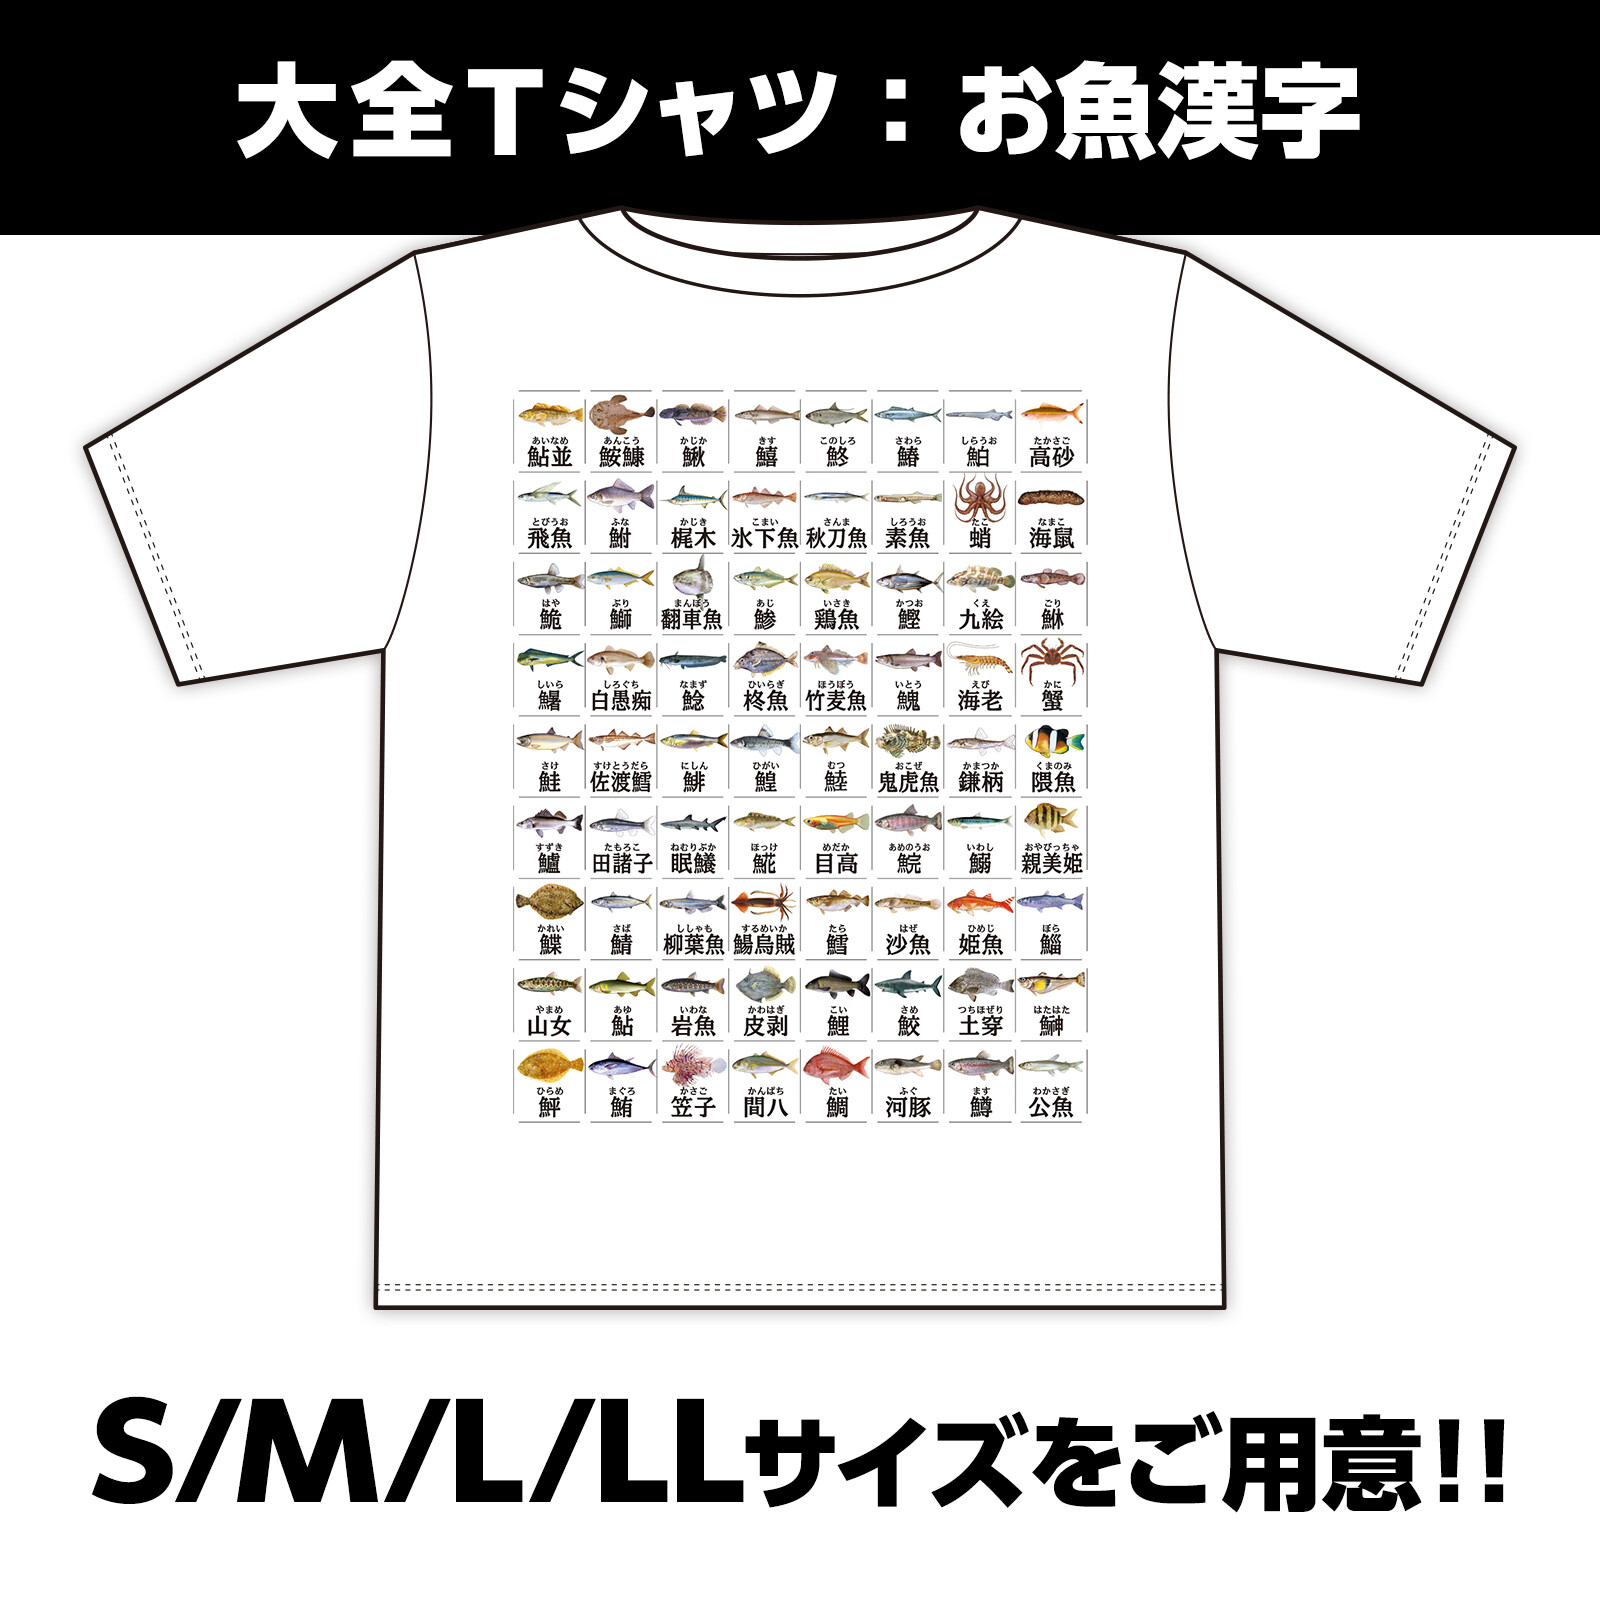 大全tシャツお魚漢字の商品ページ 卸 仕入れサイト スーパーデリバリー